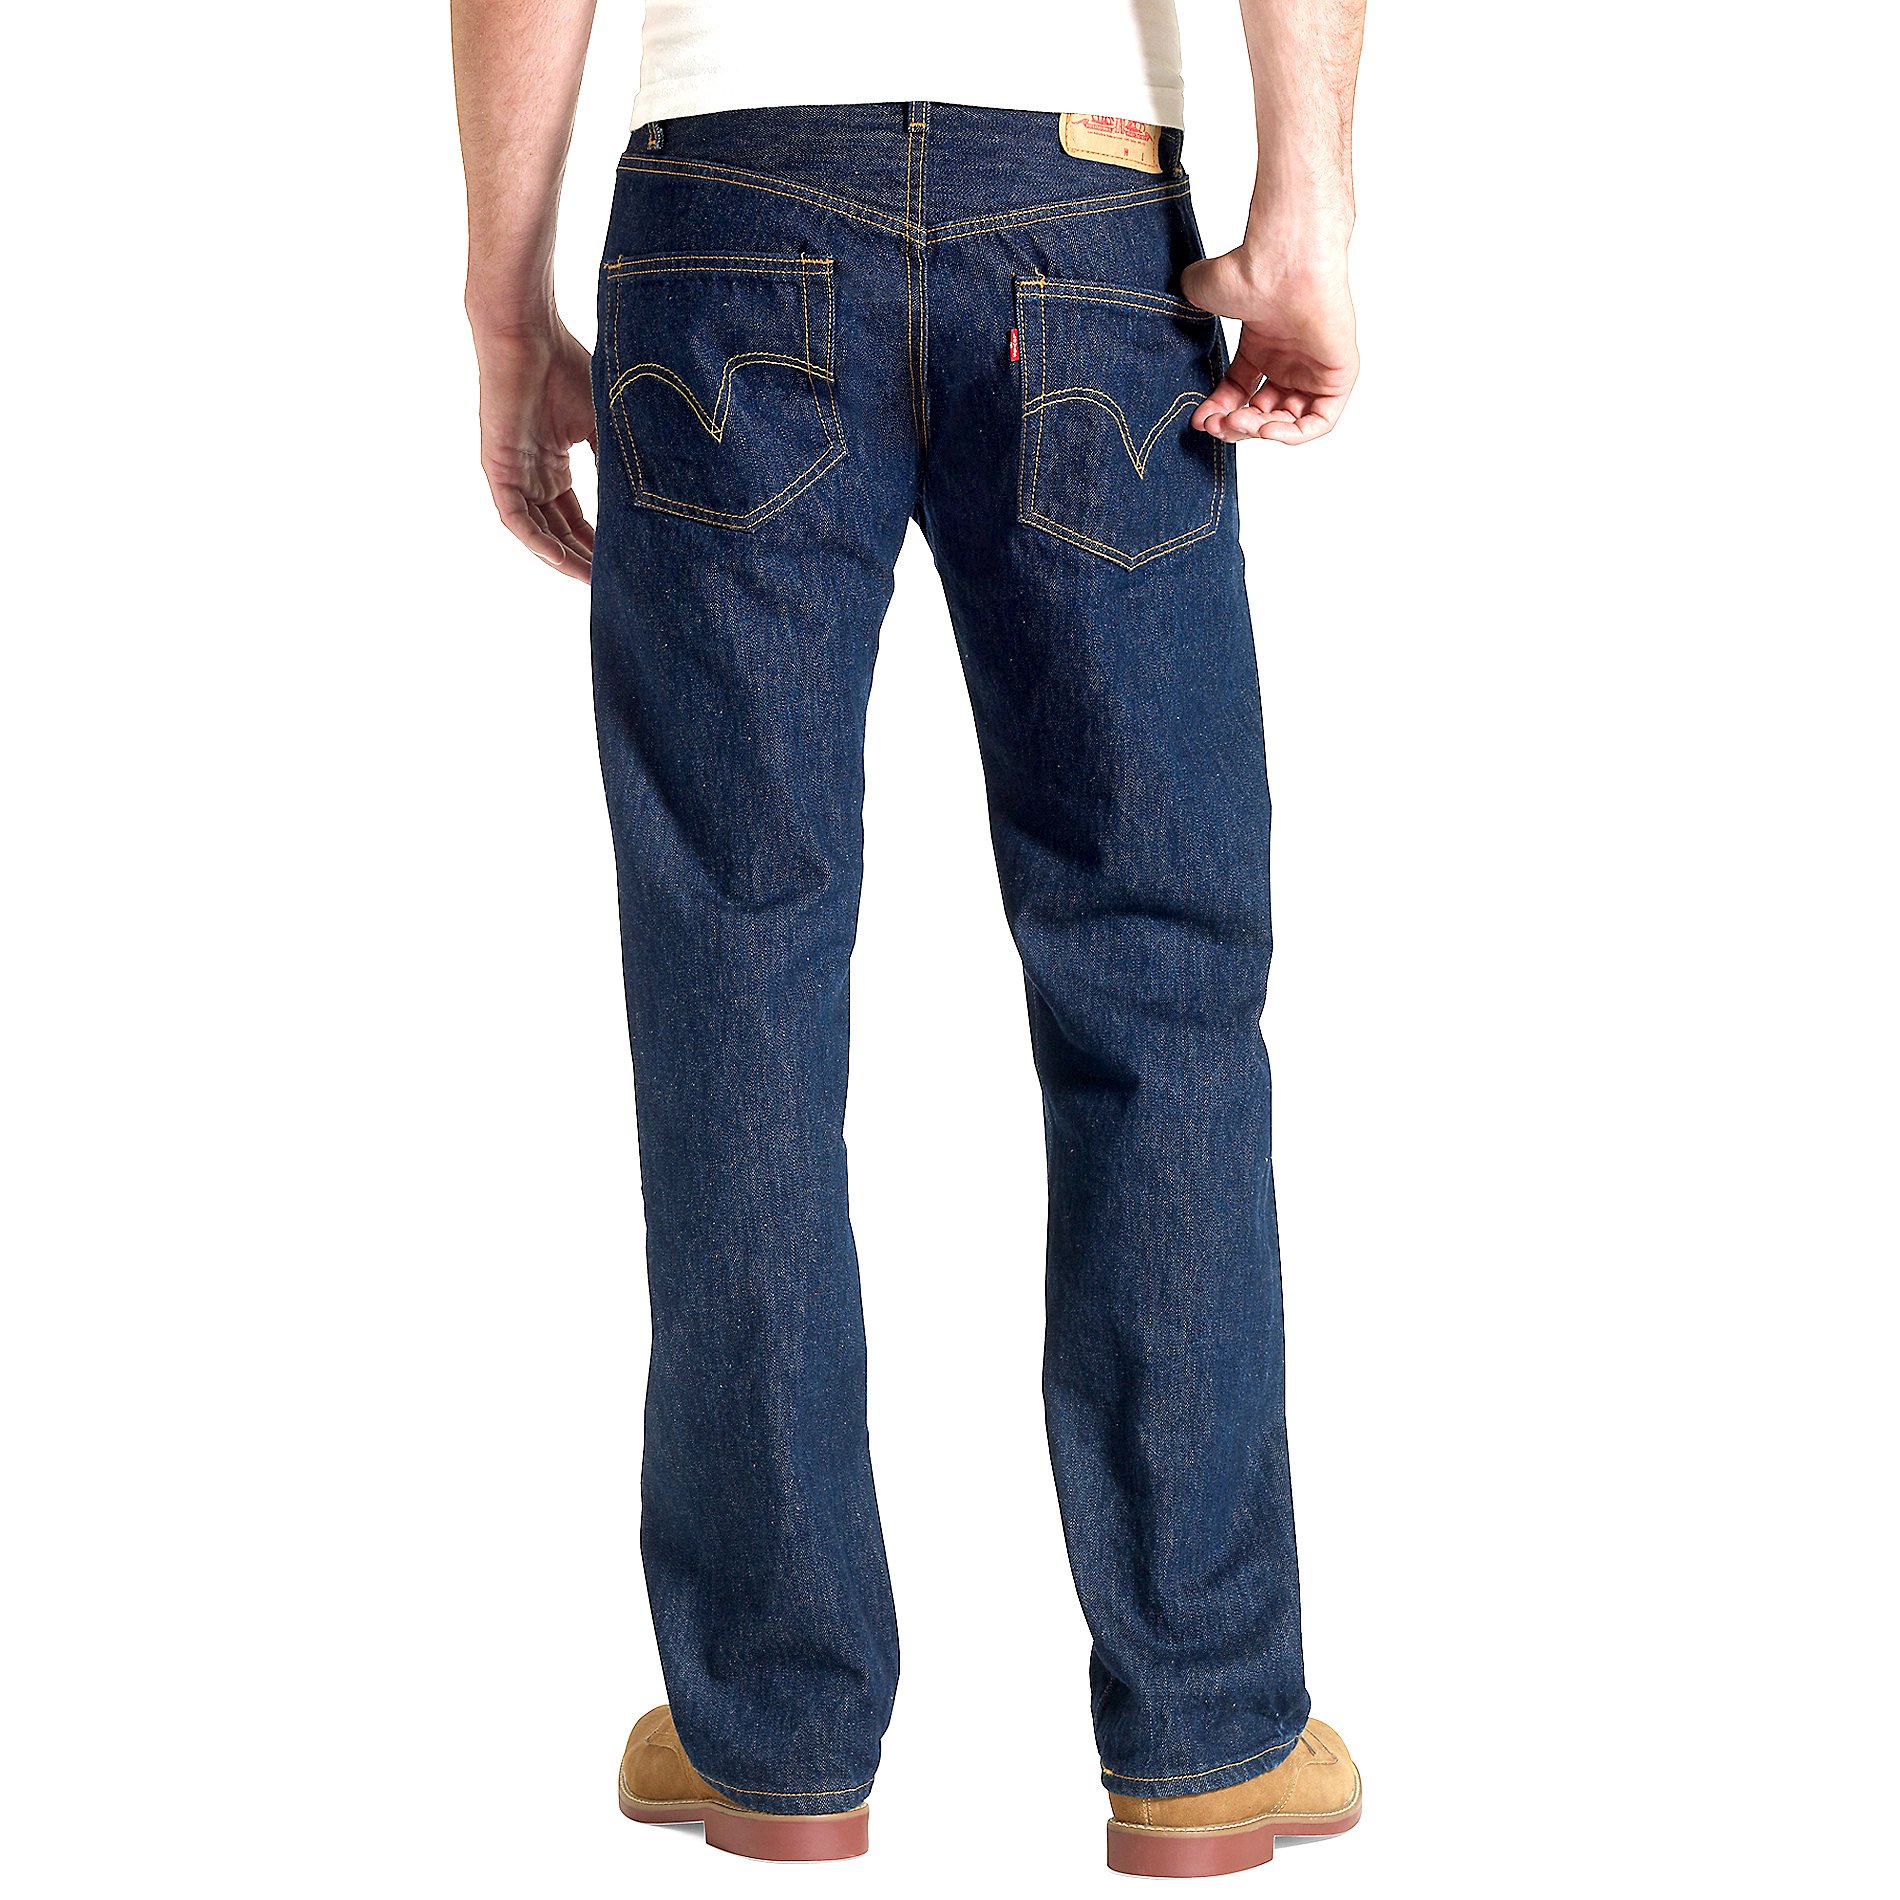 Jeans 501 Levis Original Fit Levi S Para Caballero Sears